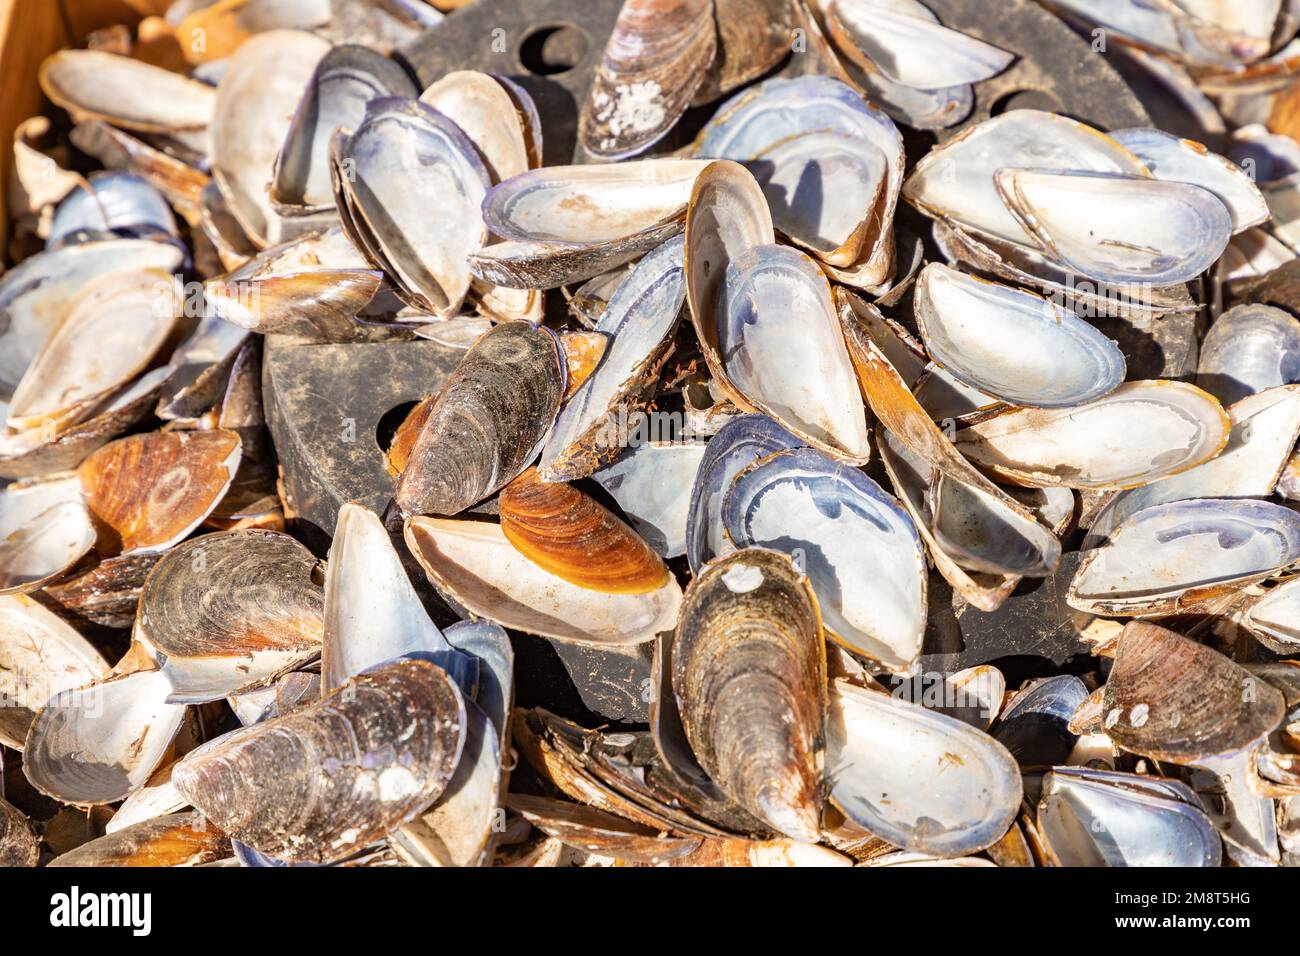 Geöffnete Muscheln im Hintergrund. Muscheln an der Küste. Meeresfrüchte aus Asov. Stockfoto